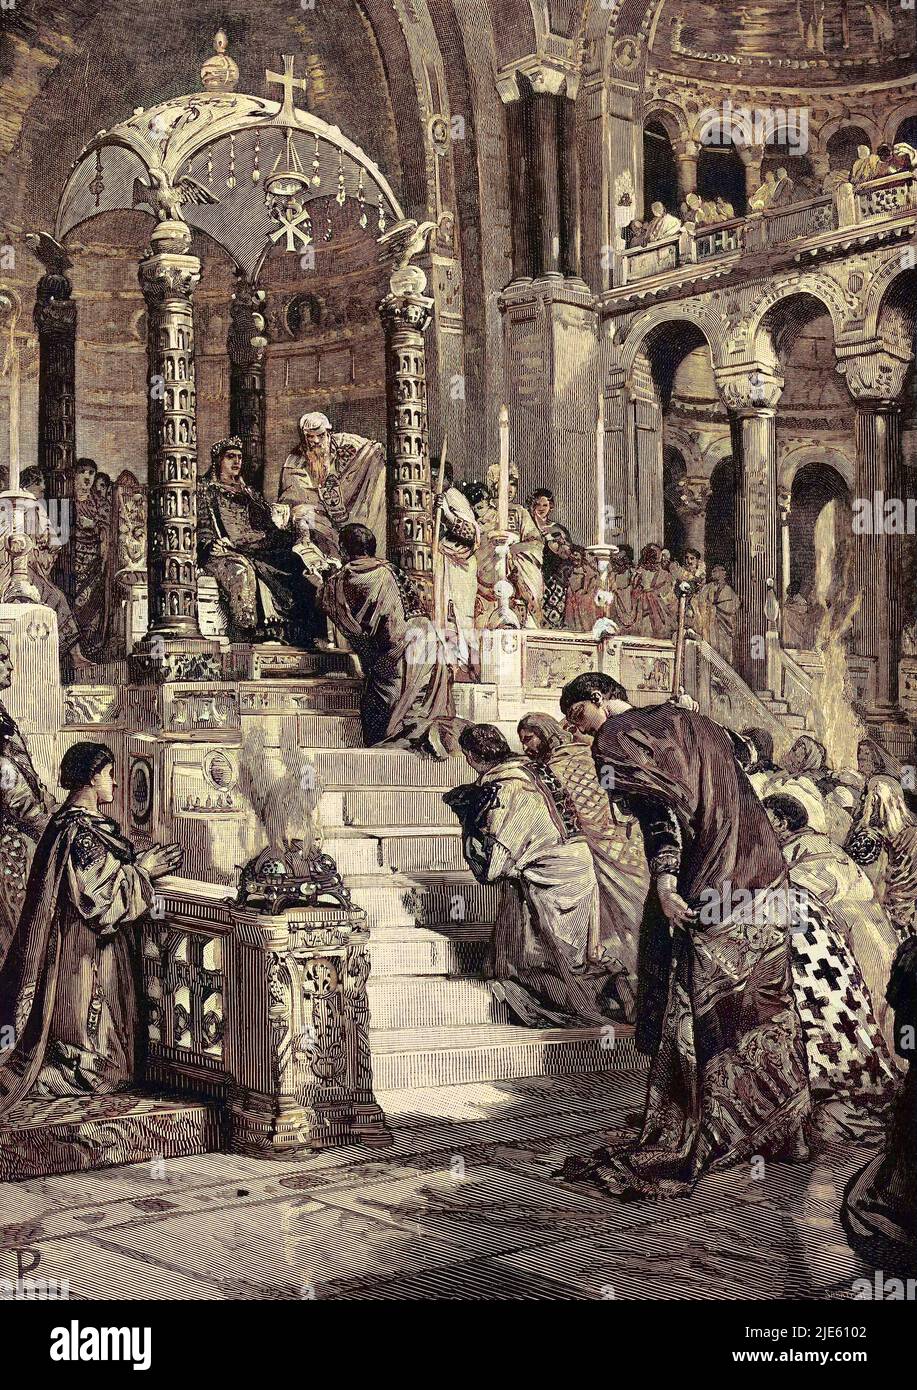 Théodoric le Grand ou Théodoric l'Amale reçoit l'investiture de l'Italie de l'empereur Zénon (empereur byzantin) 5e siècle. Stock Photo